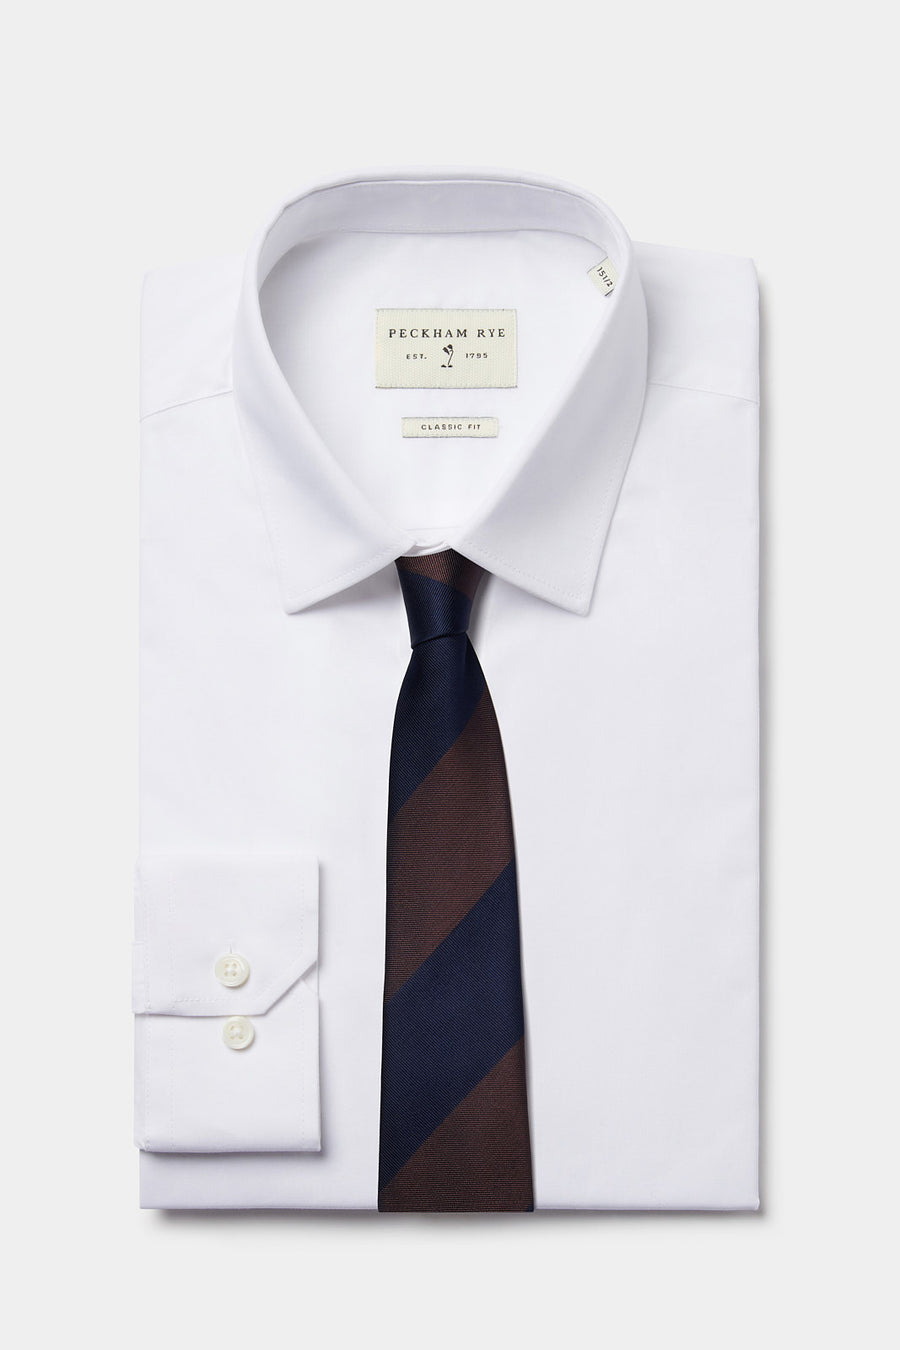 100% Silk Striped Tie in Navy Blue